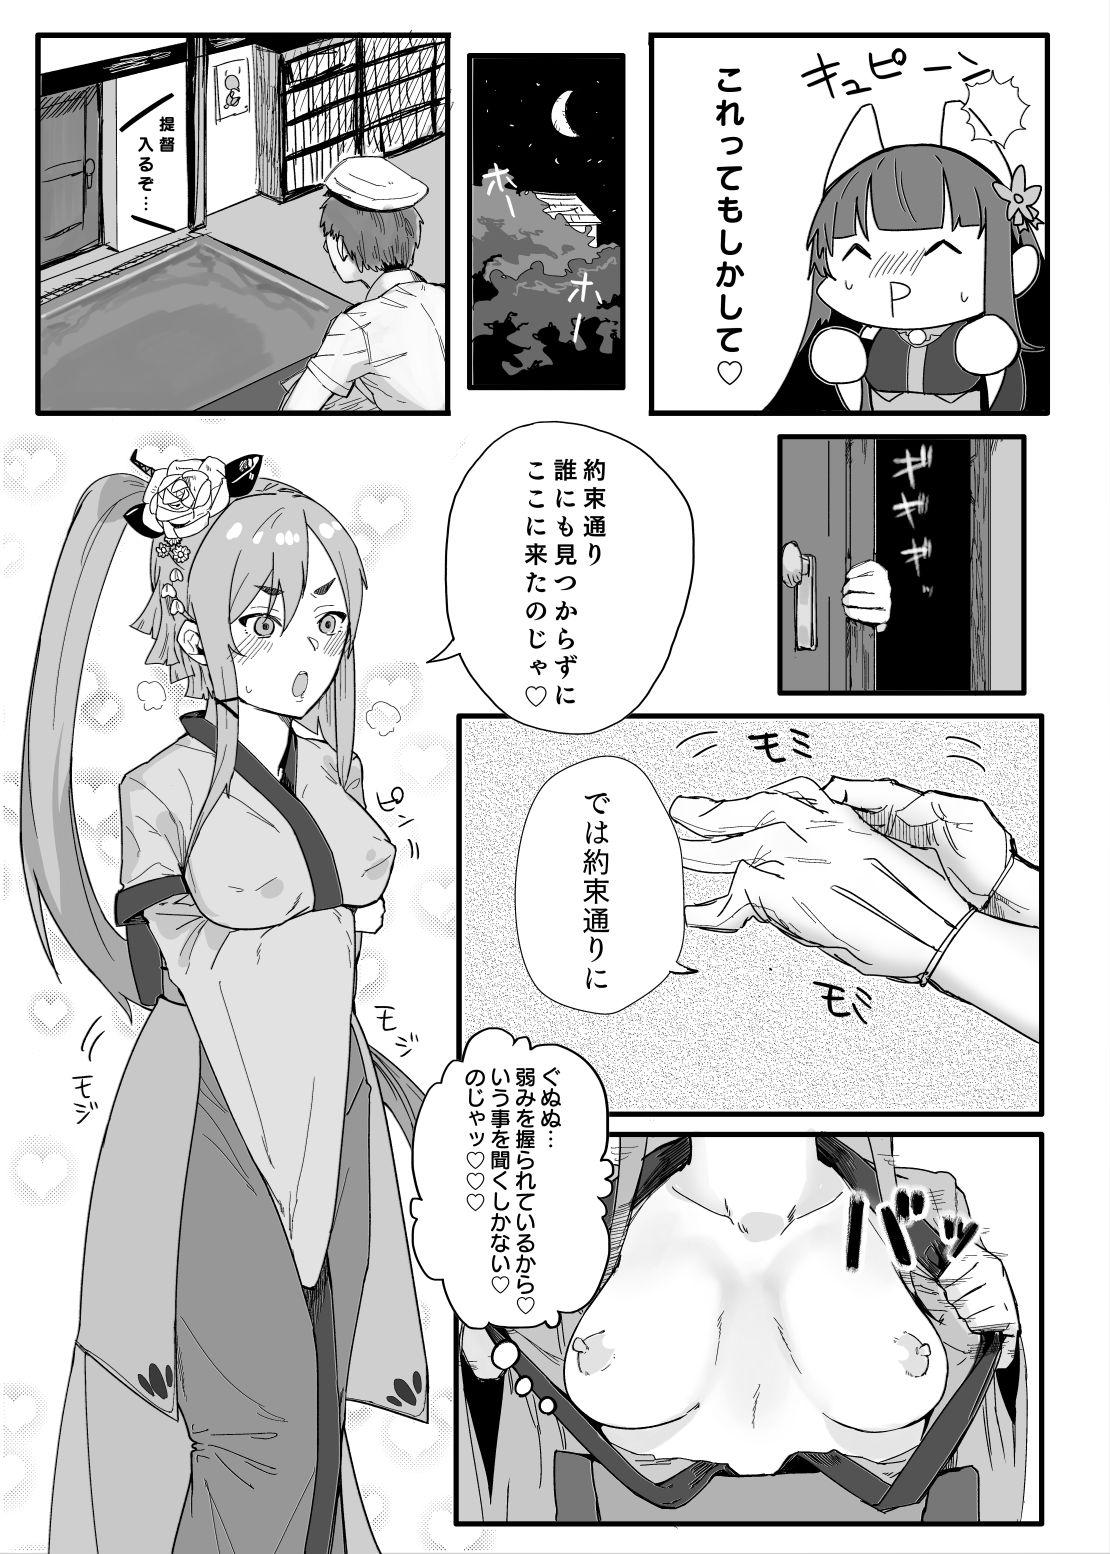 Cdzinha Akagi-san wa Sore o Gaman dekinai - Warship girls Salope - Page 7